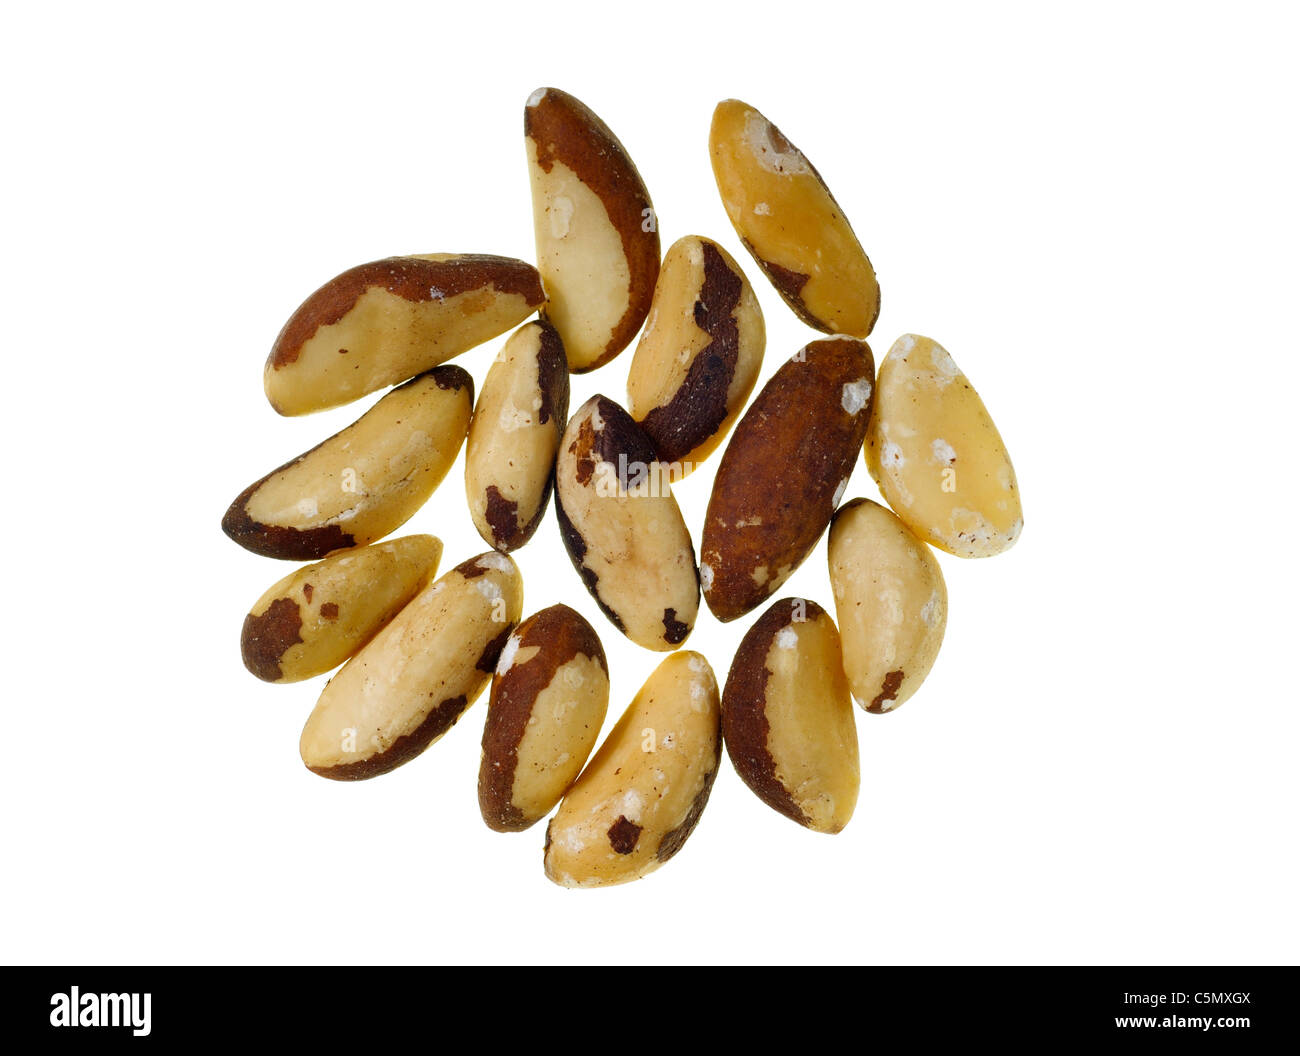 Brazil nuts Stock Photo